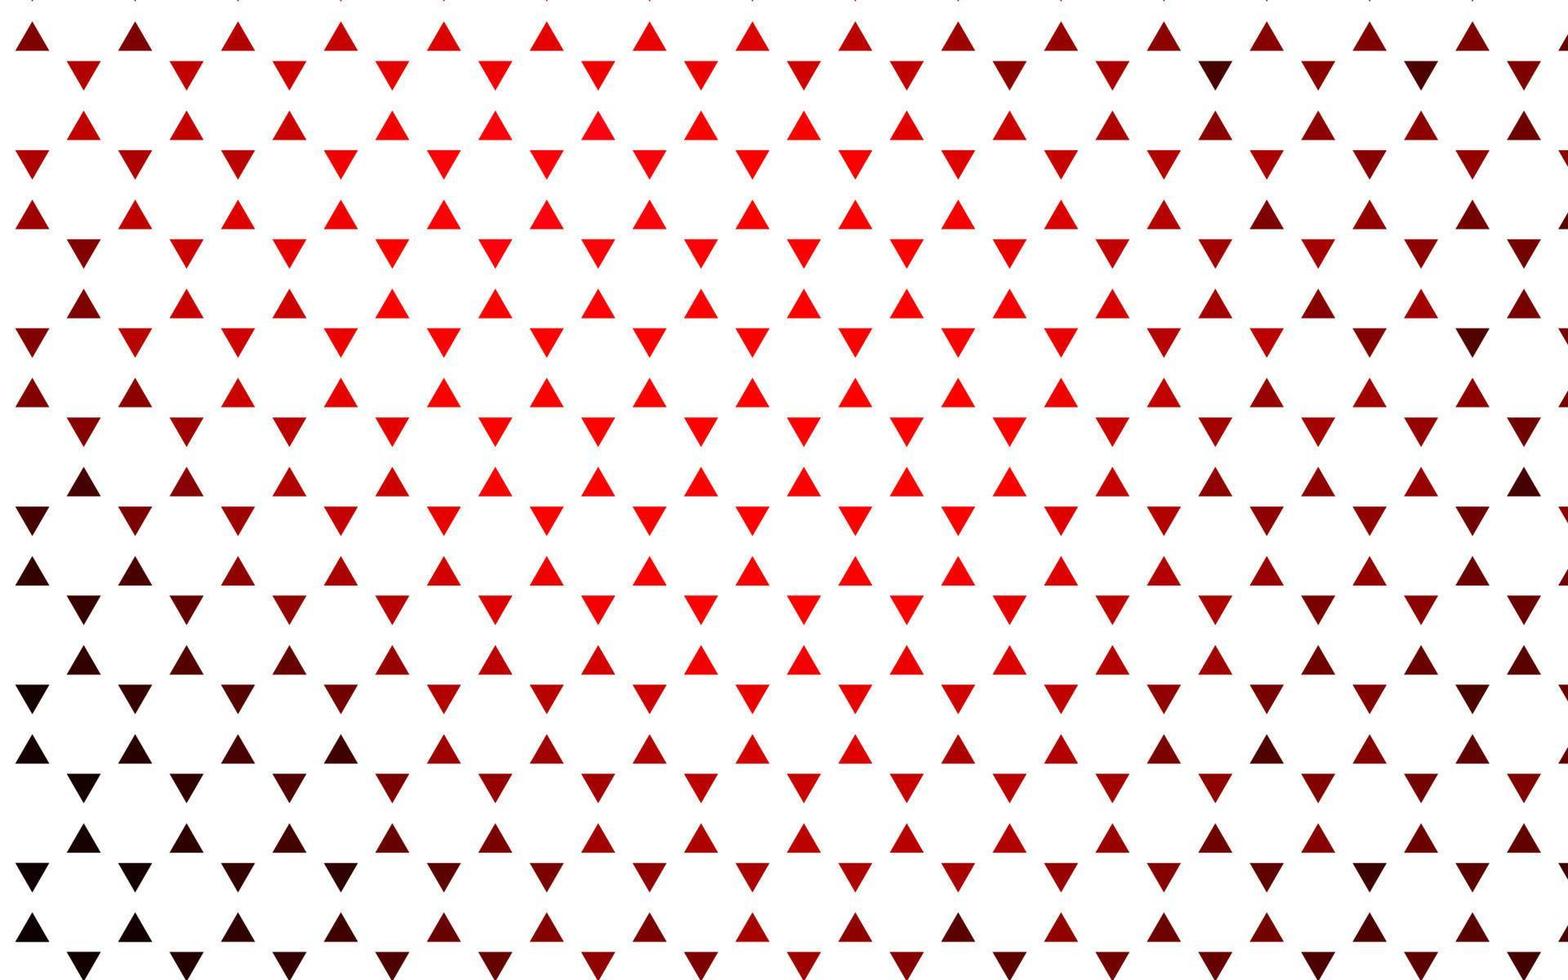 padrão sem emenda de vetor vermelho claro em estilo poligonal.